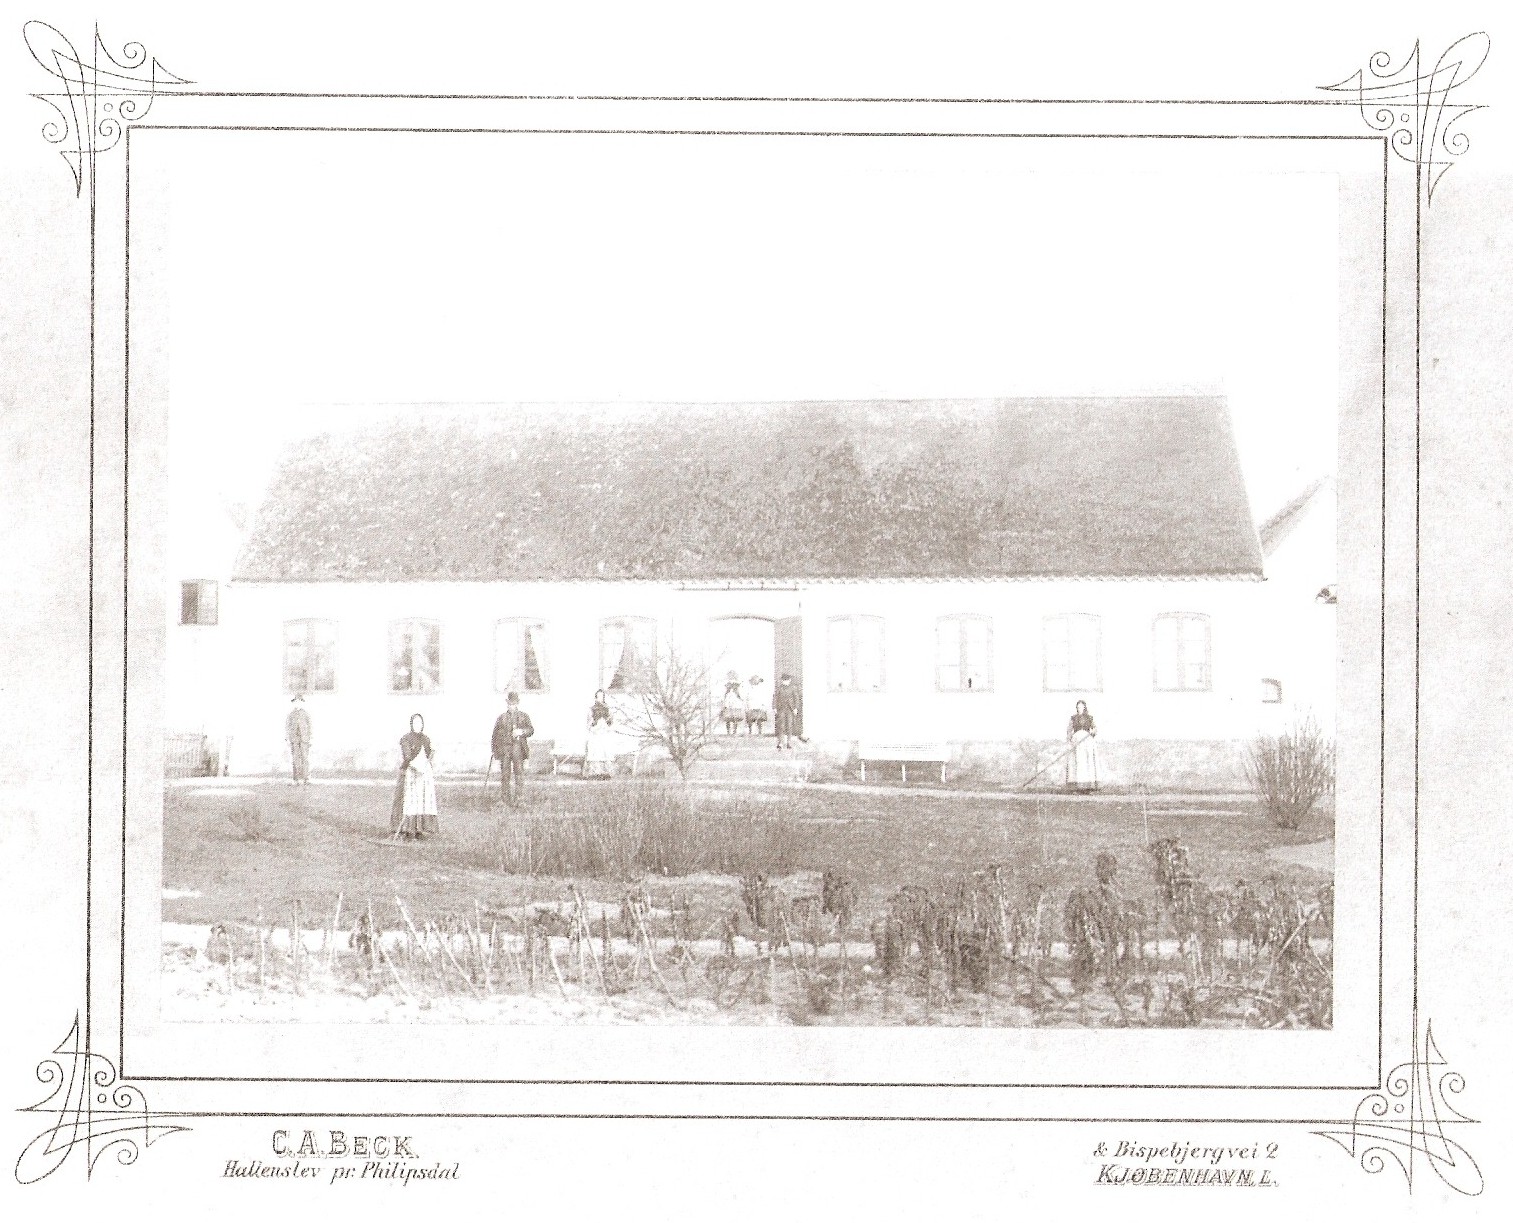 Svinningegården - ca. 1885 (B7102)